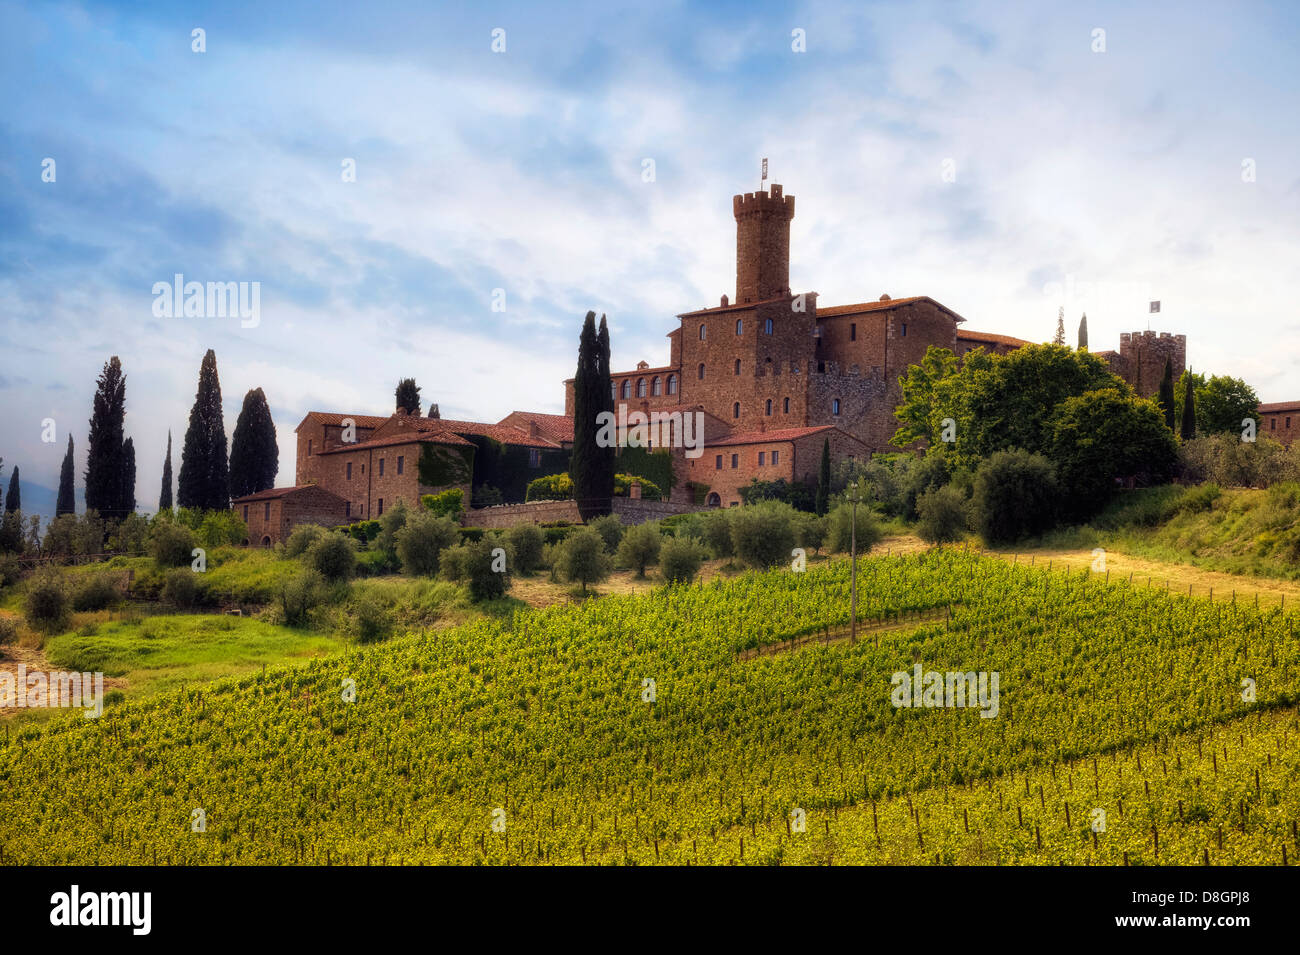 Castello di Poggio alle Mura, Montalcino, Tuscany, Italy Stock Photo